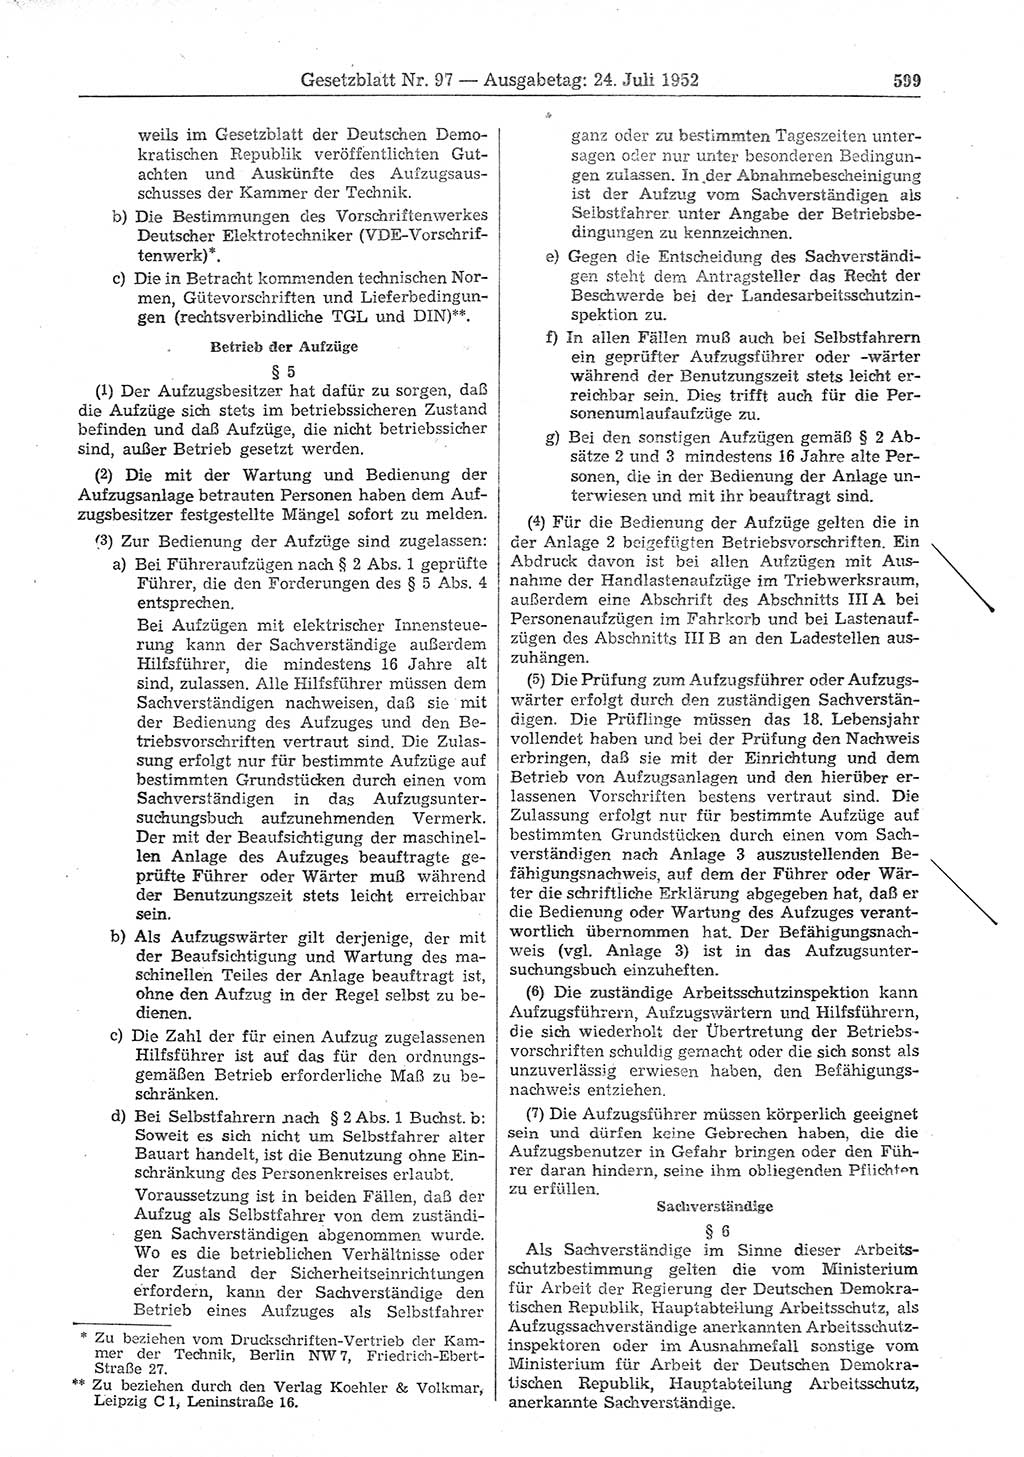 Gesetzblatt (GBl.) der Deutschen Demokratischen Republik (DDR) 1952, Seite 599 (GBl. DDR 1952, S. 599)